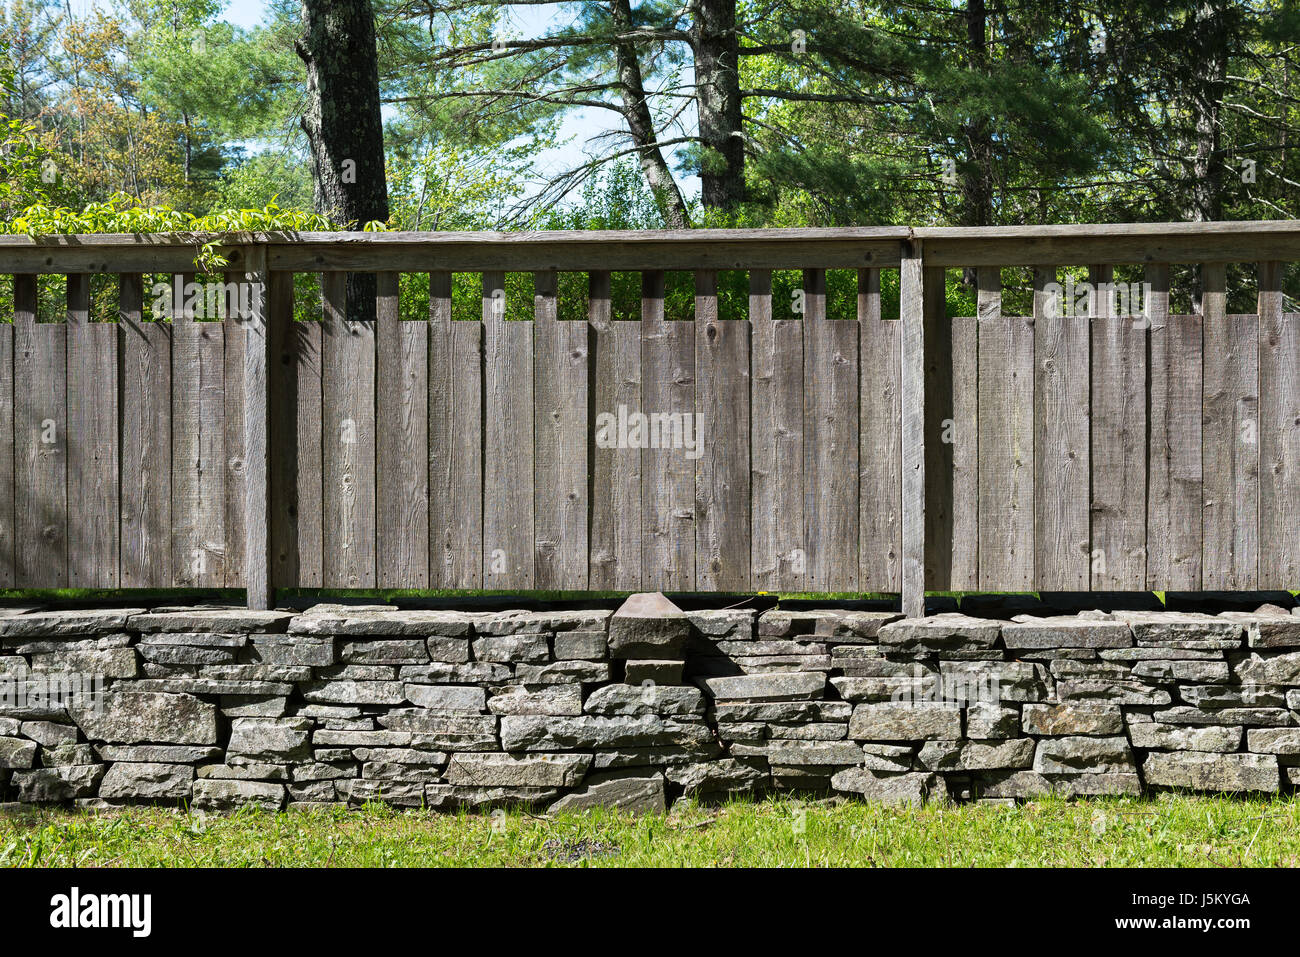 L'article de pierre empilées avec mur de clôture en bois vieilli gris réglage du pays . L'herbe en premier plan et arbres en arrière-plan. Banque D'Images